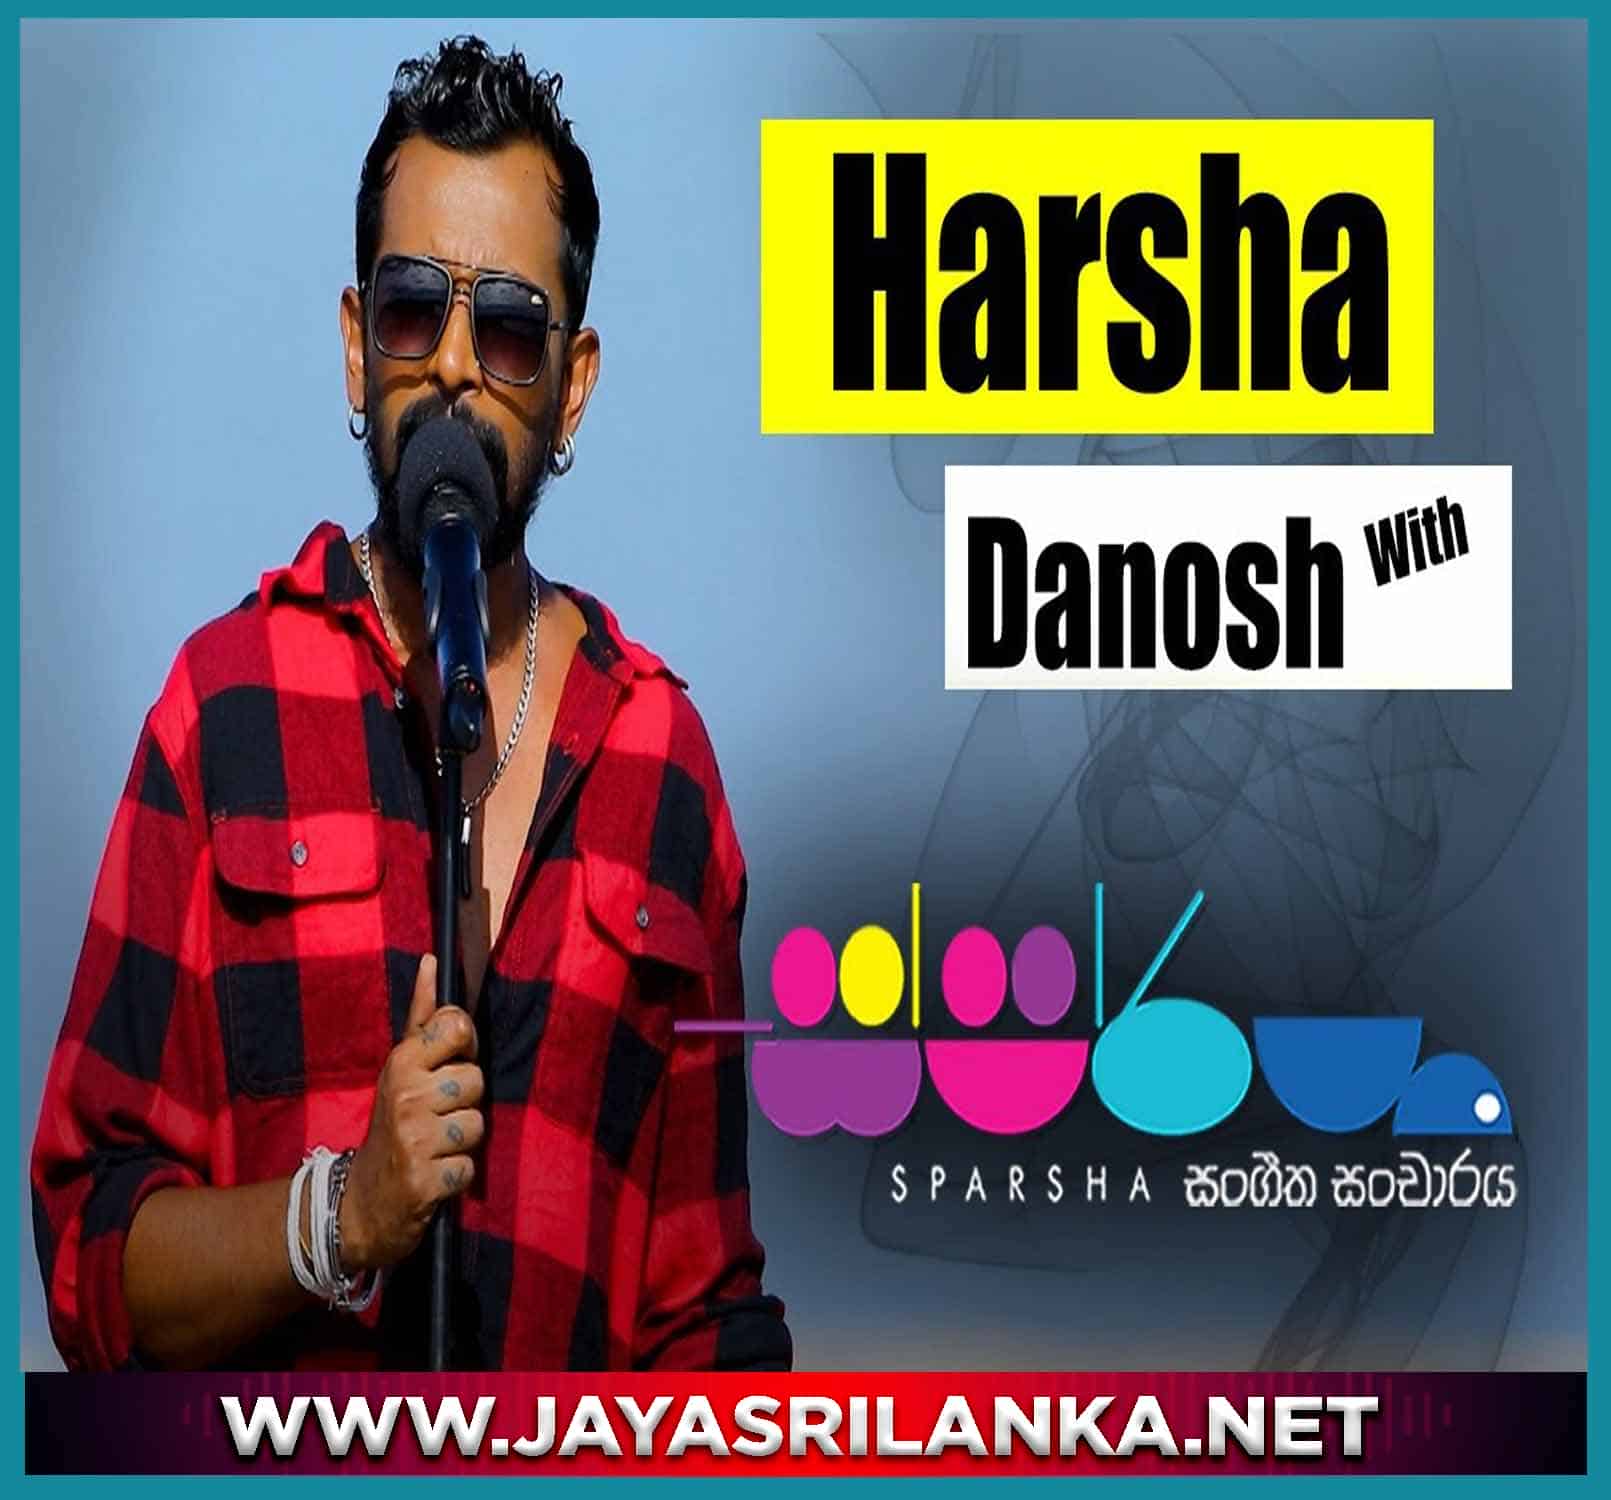 07 - Yana Thenaka (Sparsha) - Harsha Danosh mp3 Image